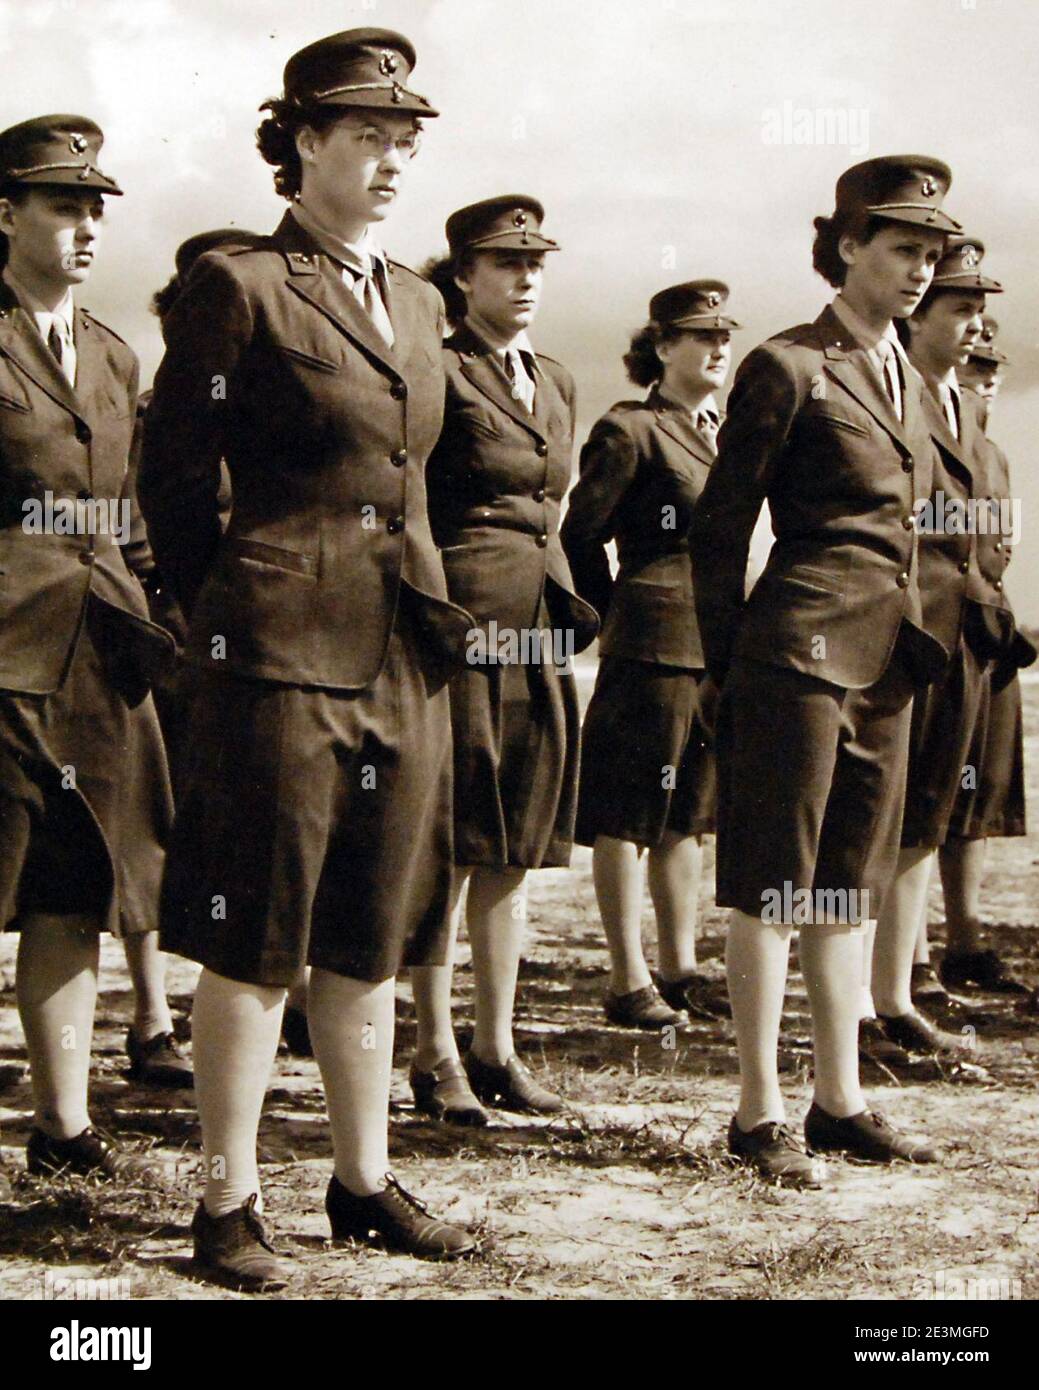 Marine Corps Womens Reserve presso la Marine Corps Air Station, Cherry Point, North Carolina al Parade Rest durante la revisione nel novembre 1943. Foto Stock